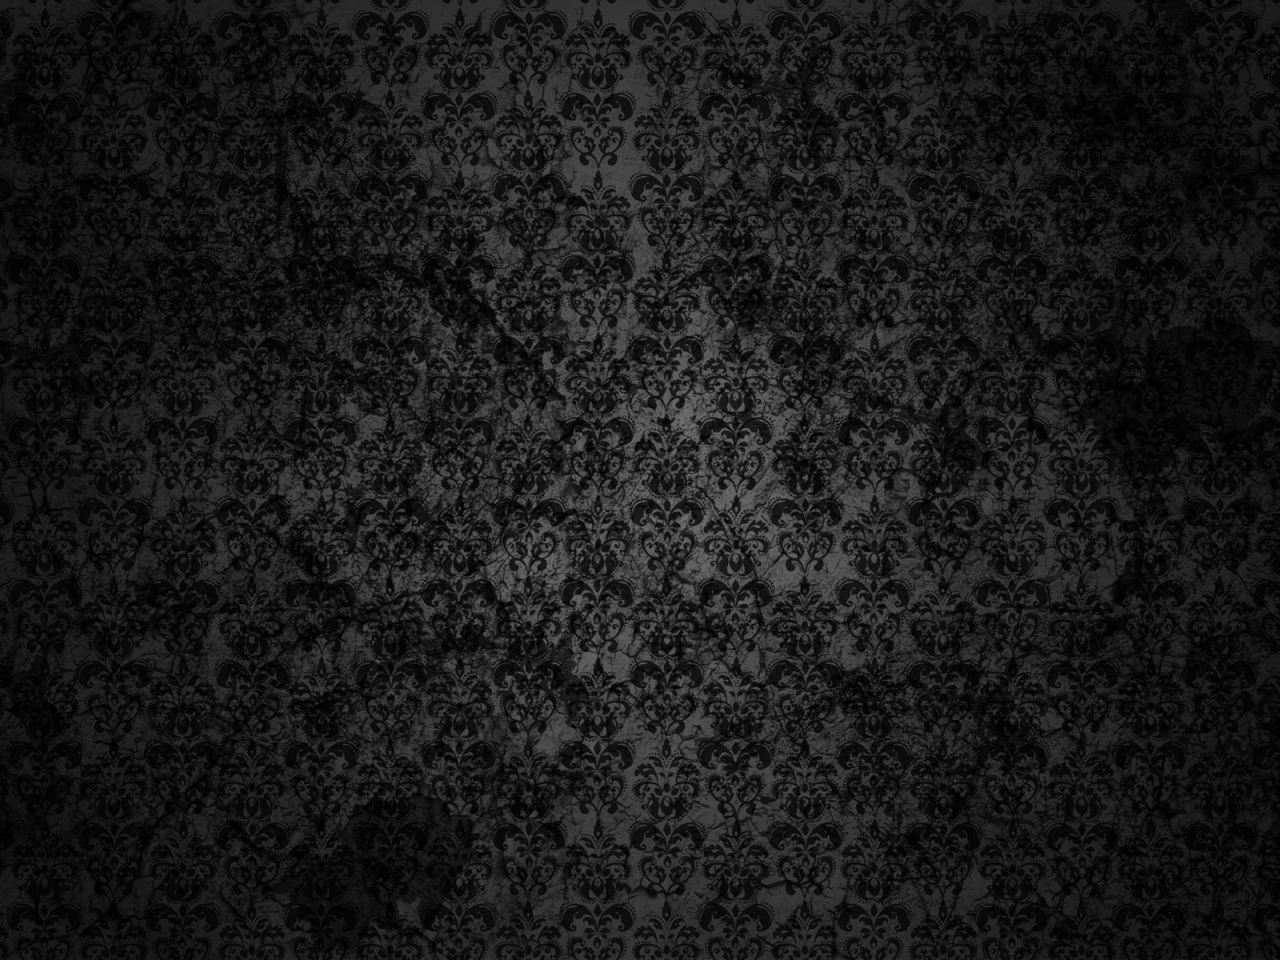 Black Floral Grunge for 1280 x 960 resolution